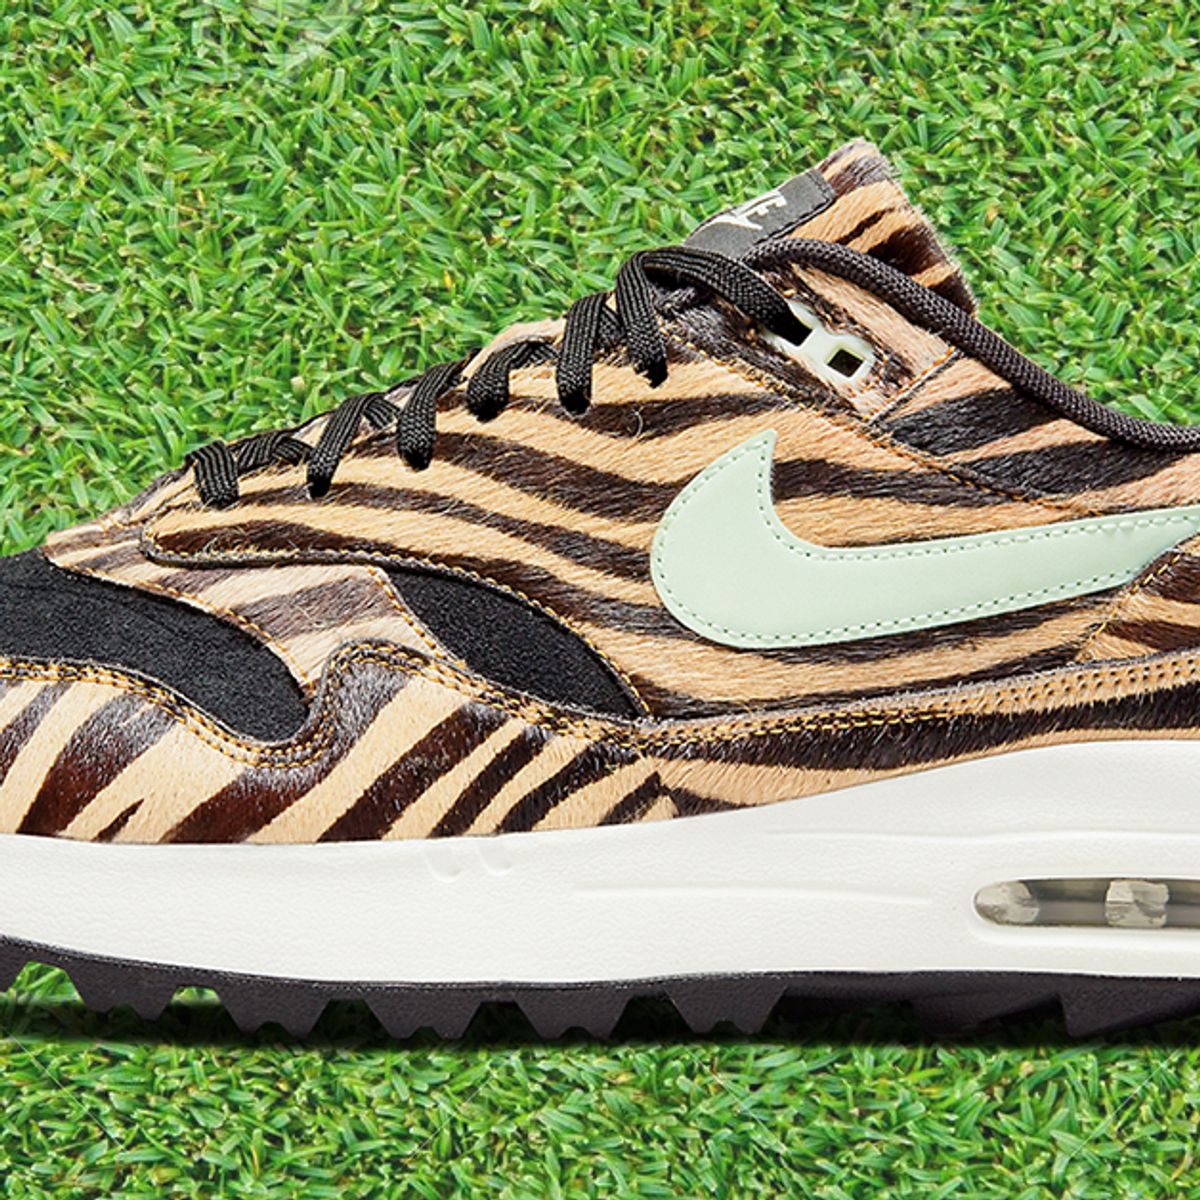 Consejo Viaje En detalle Release Info: Nike Air Max 1 Golf 'Tiger' DH1301-800 - Sneaker Freaker